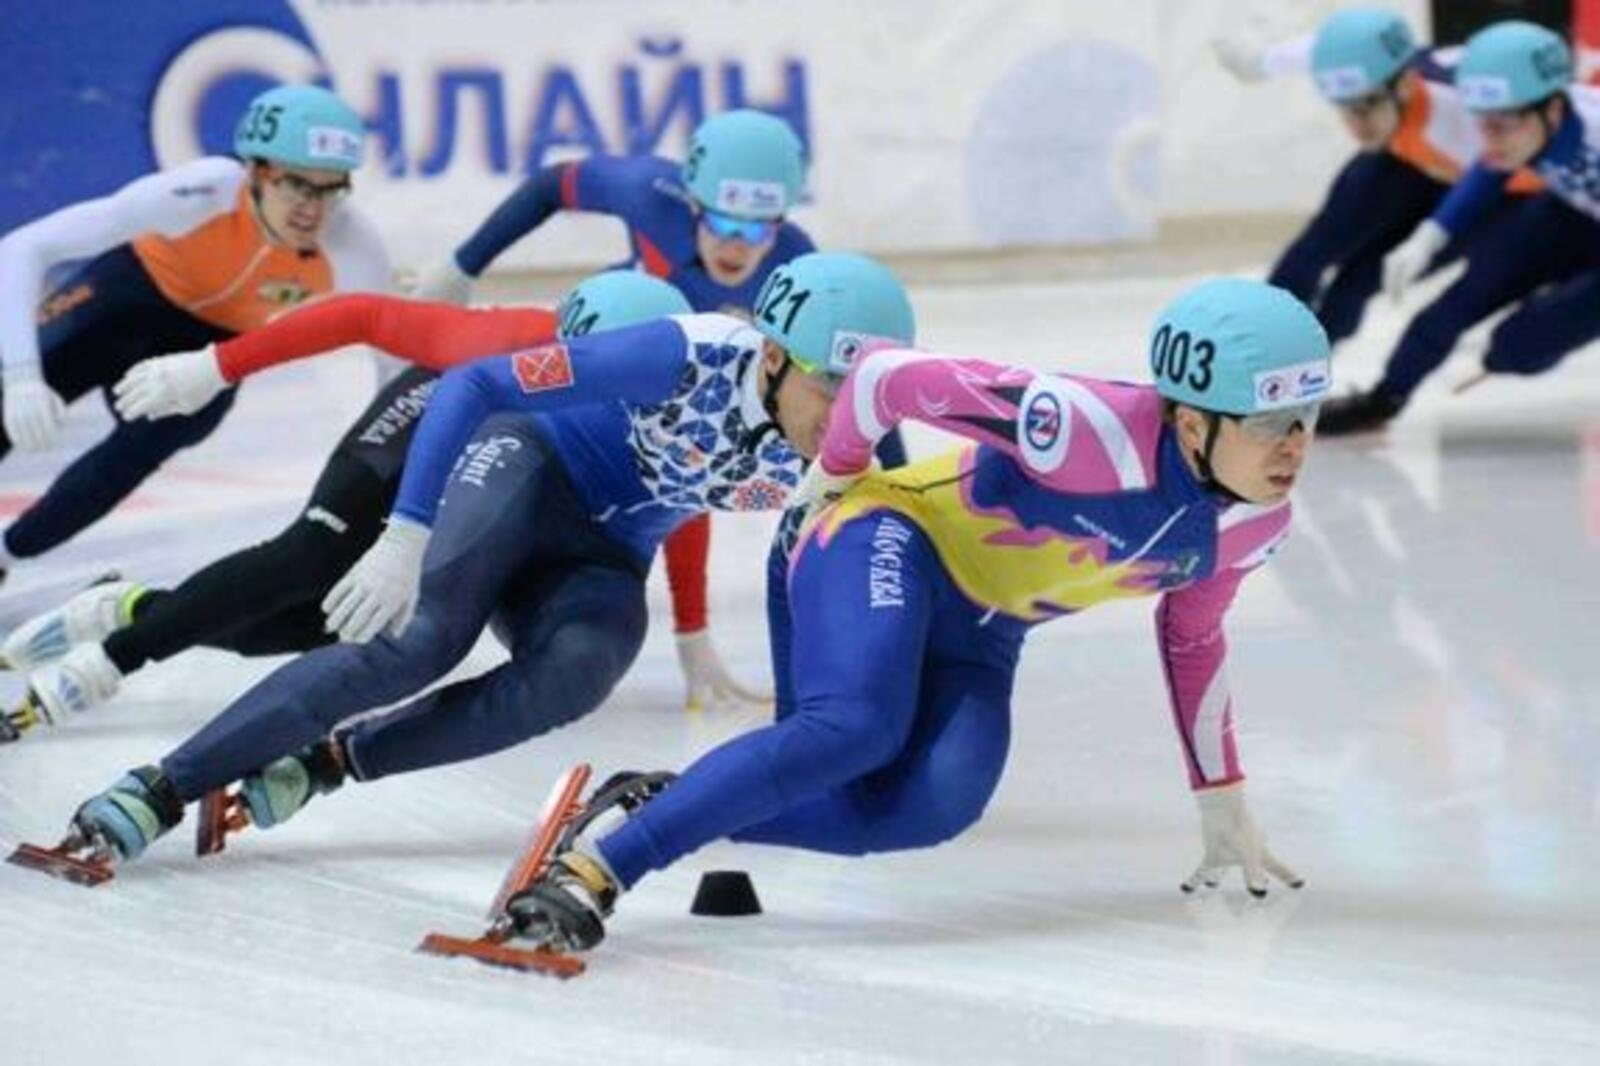 Союз конькобежцев России